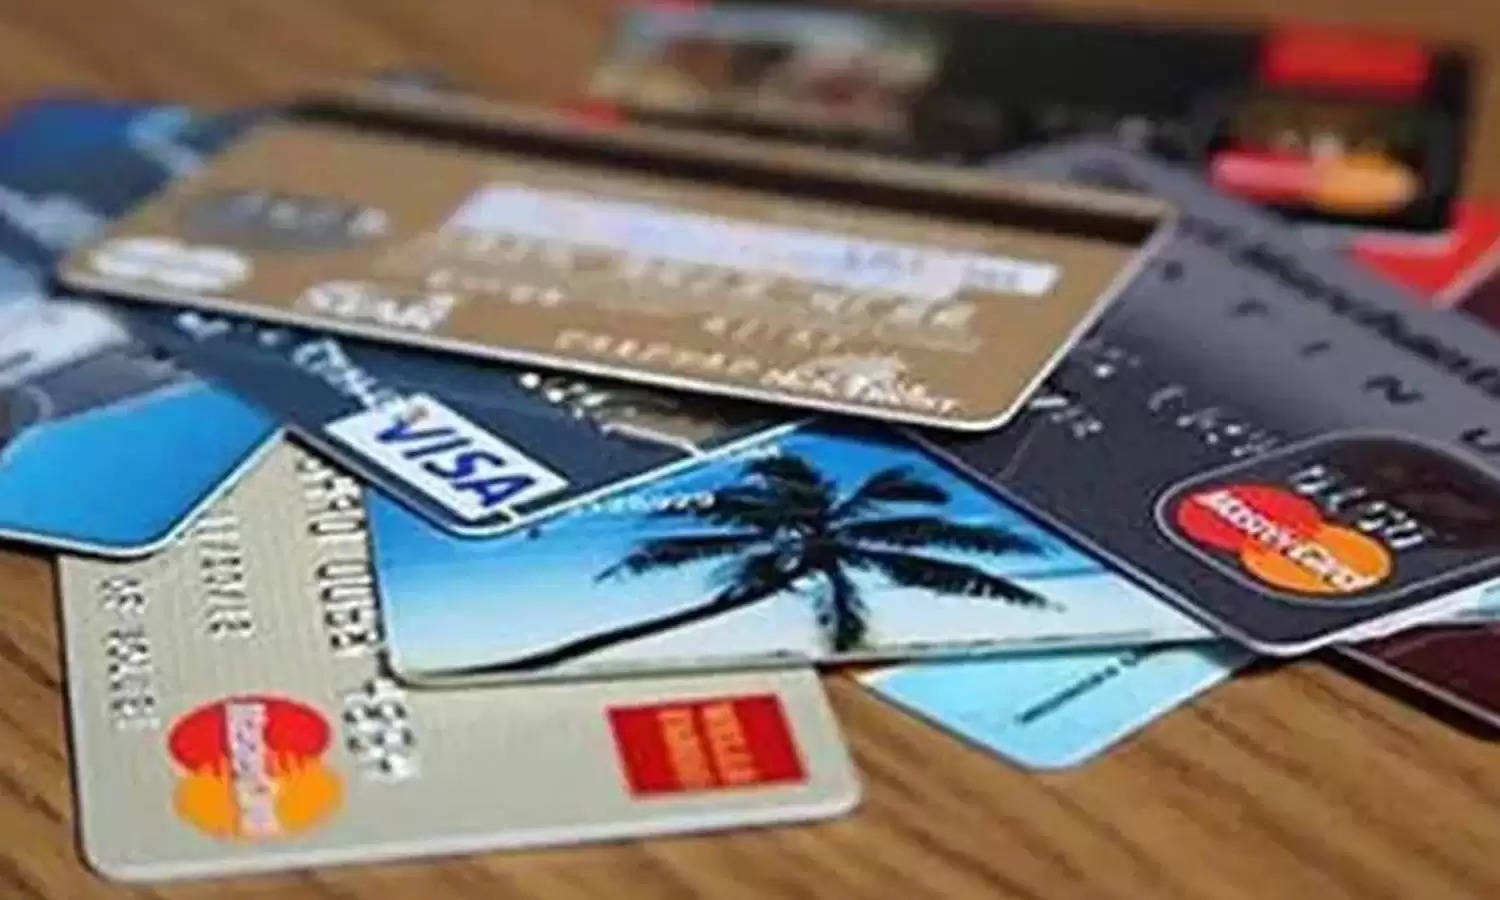 Credit and Debit Card धारकों की आ गई मौज! ऐसे डेली मिलेगें 500 रूपए, जानिए कैसे